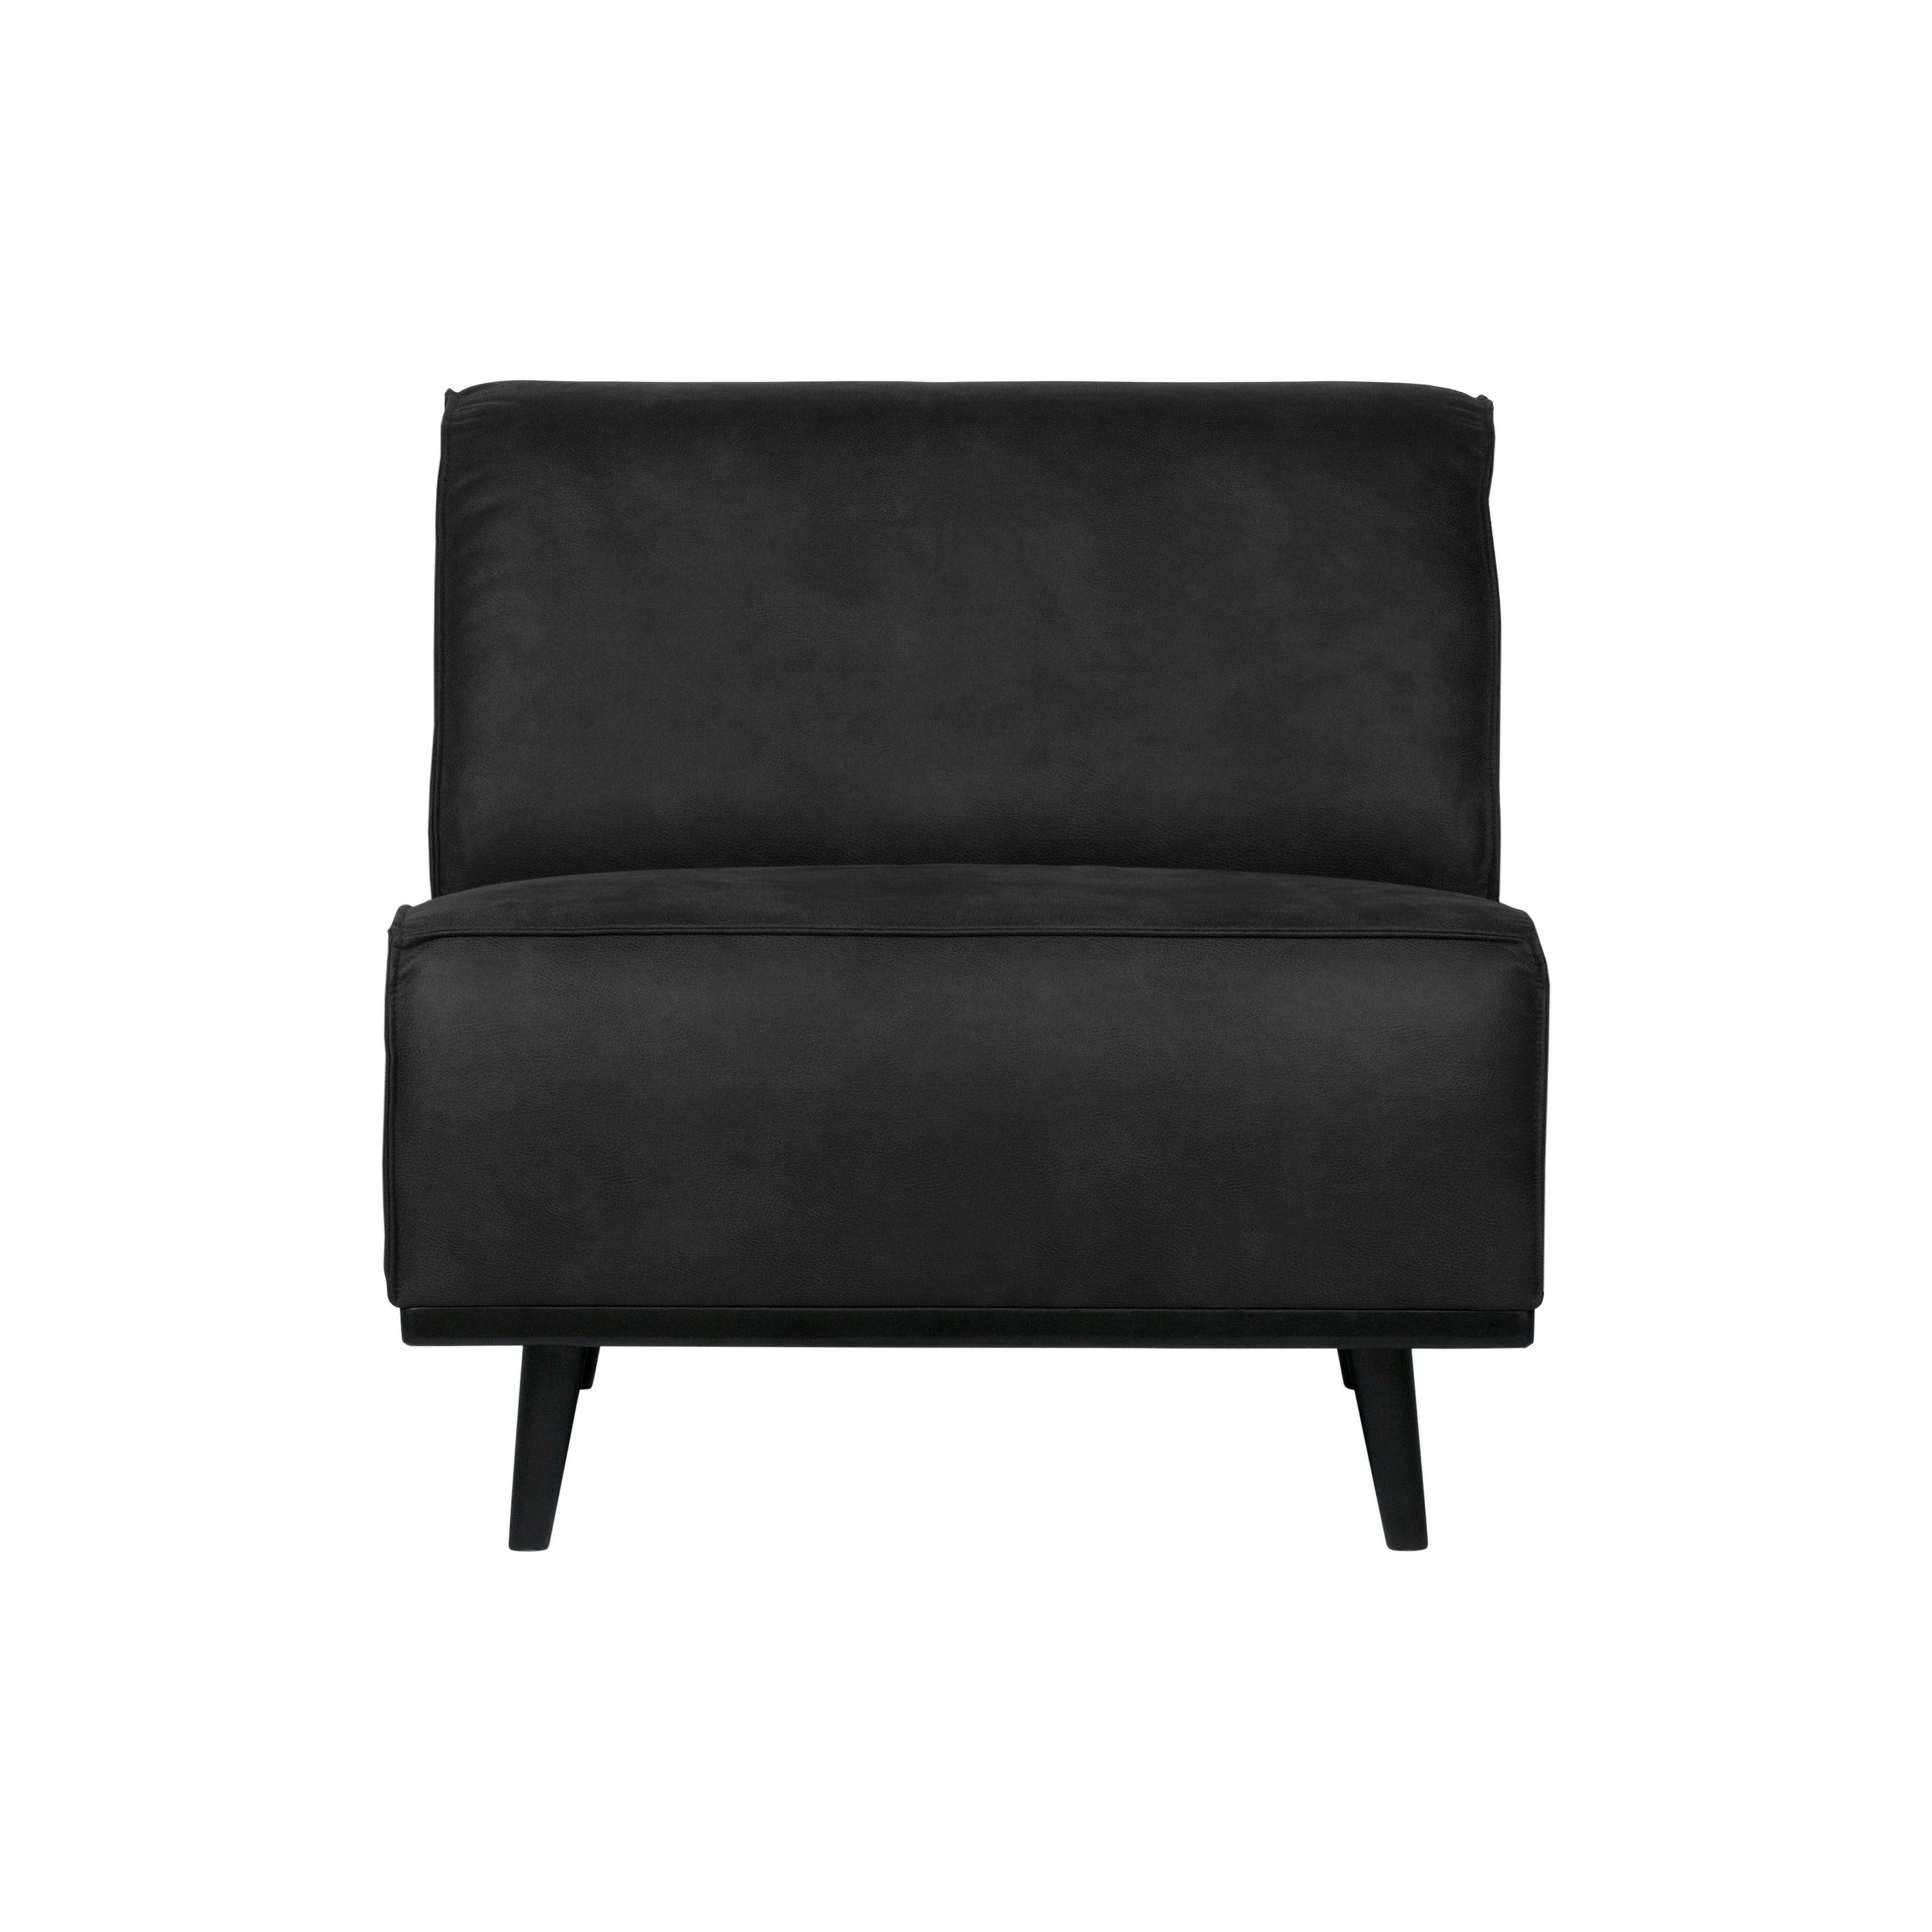 Modulinės sofos dalis STATEMENT, vienvietė, juoda spalva